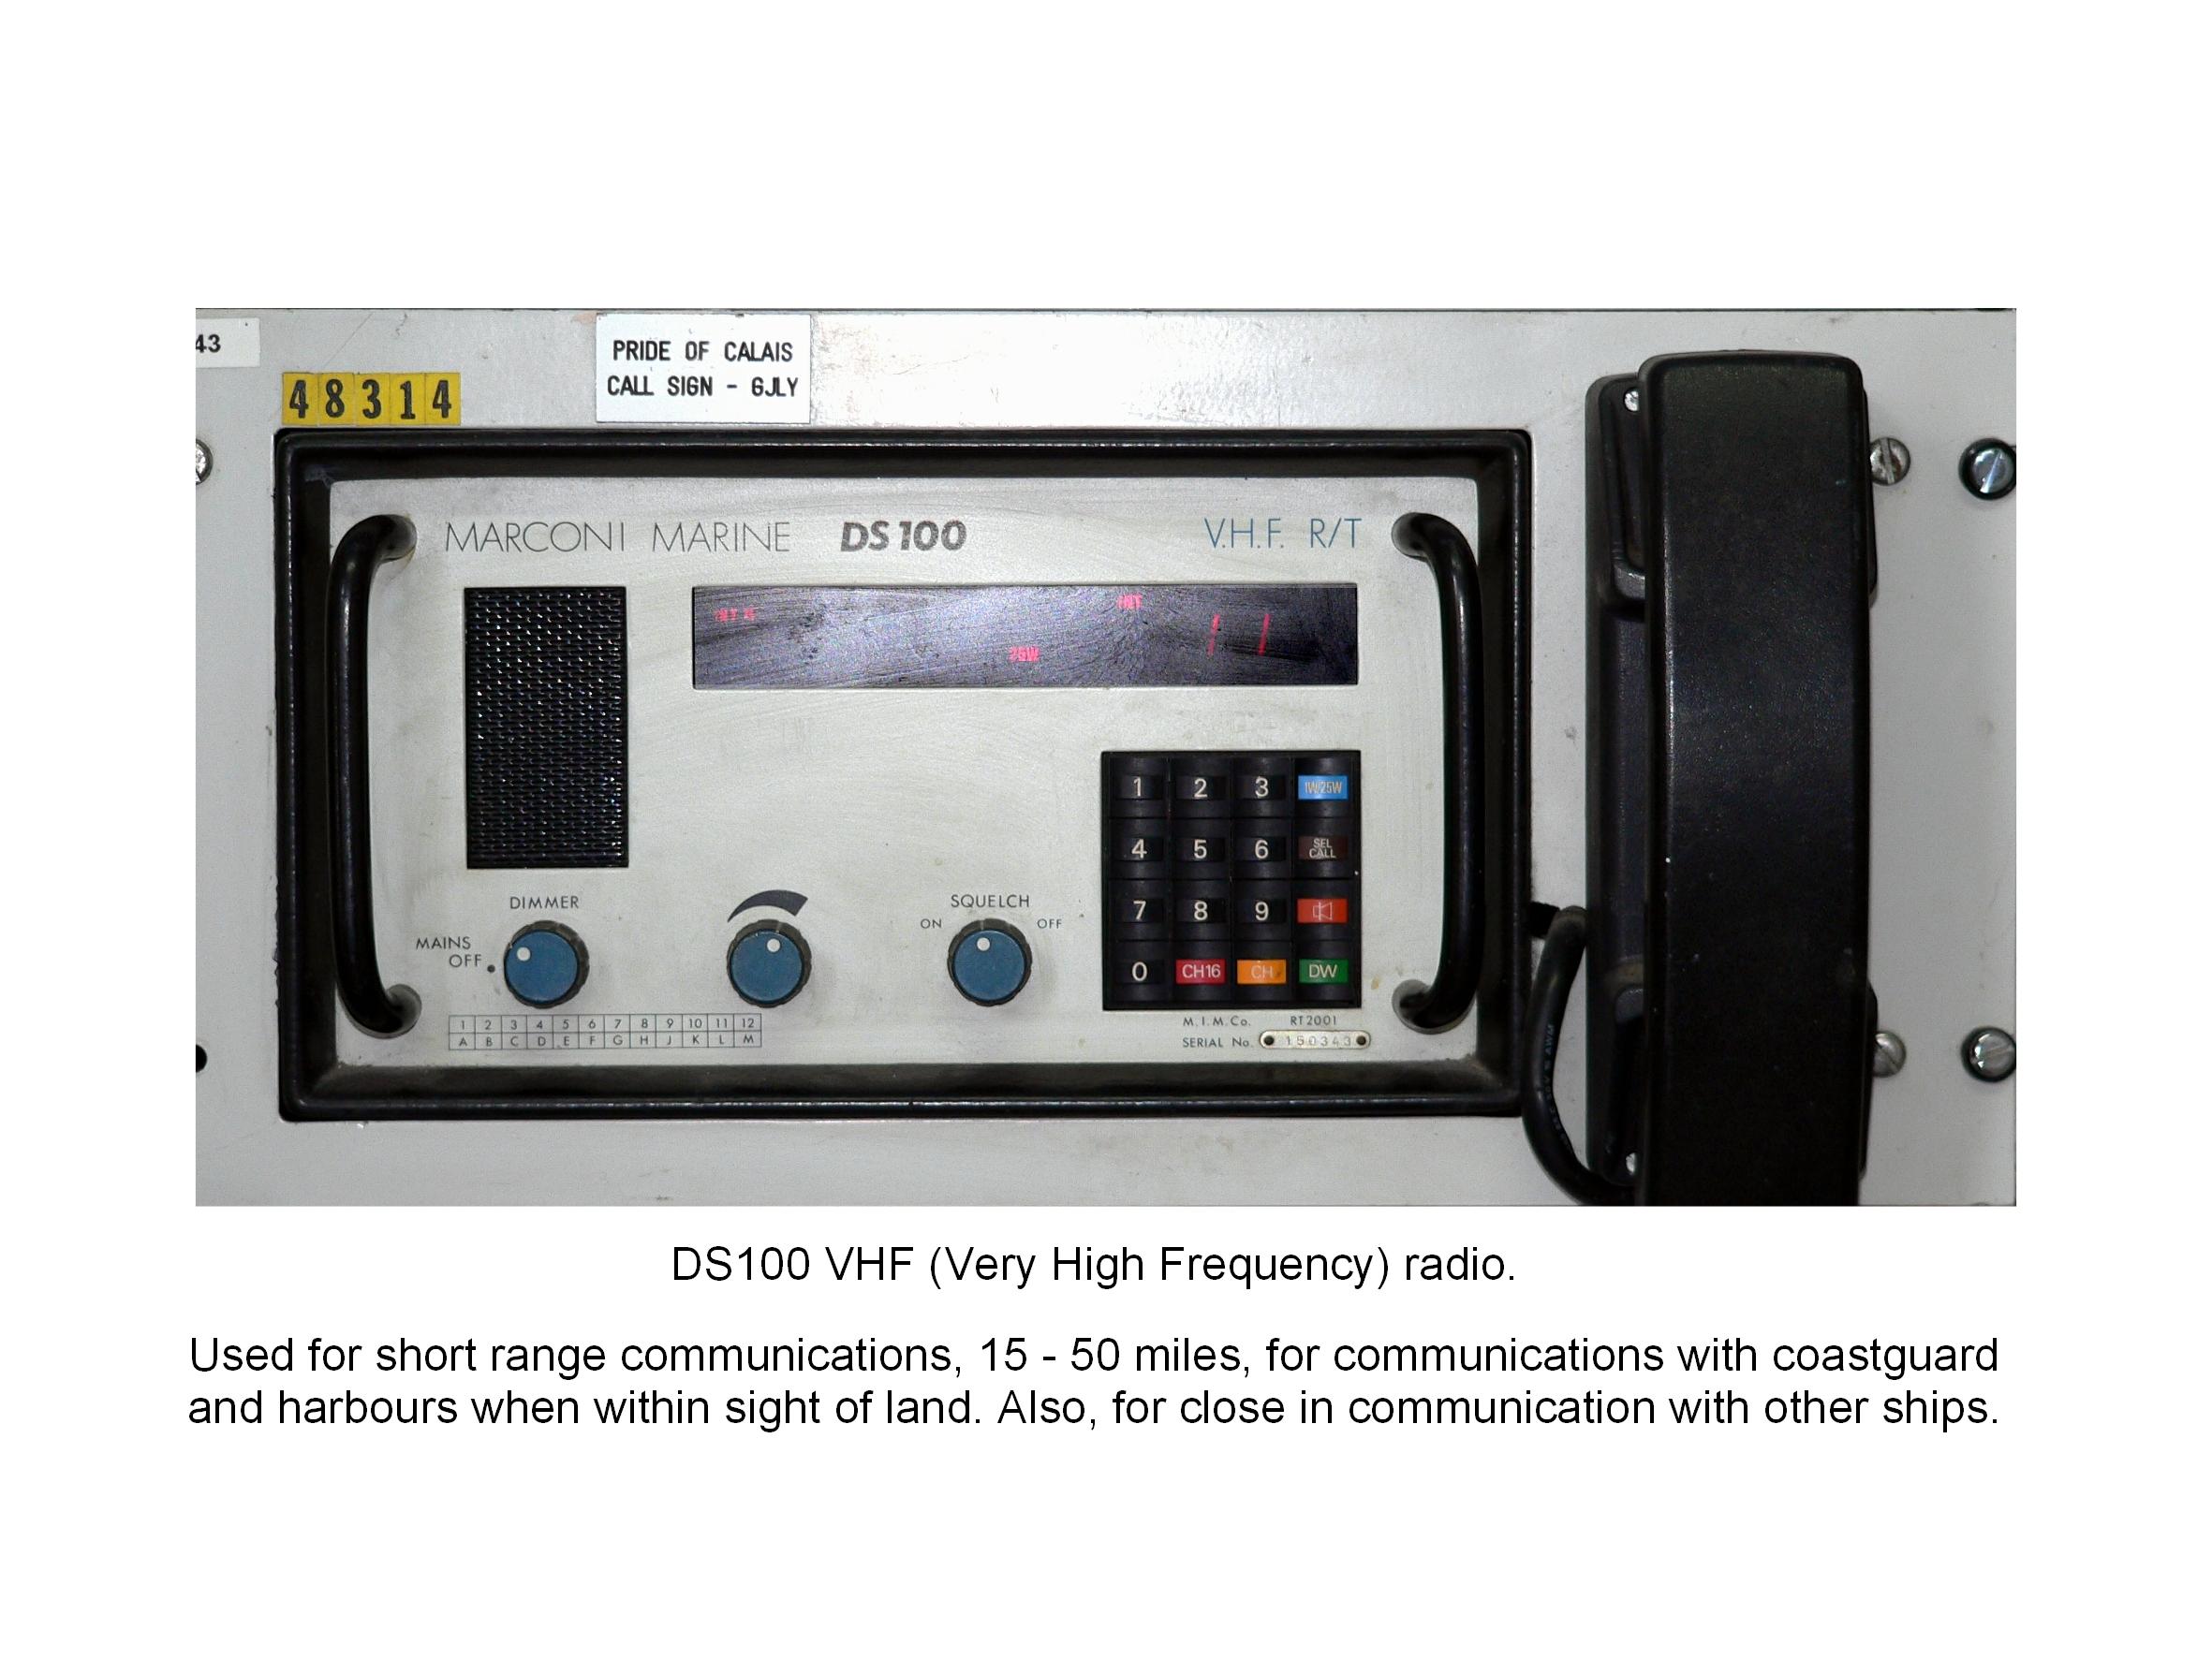 DS100: WHF radio